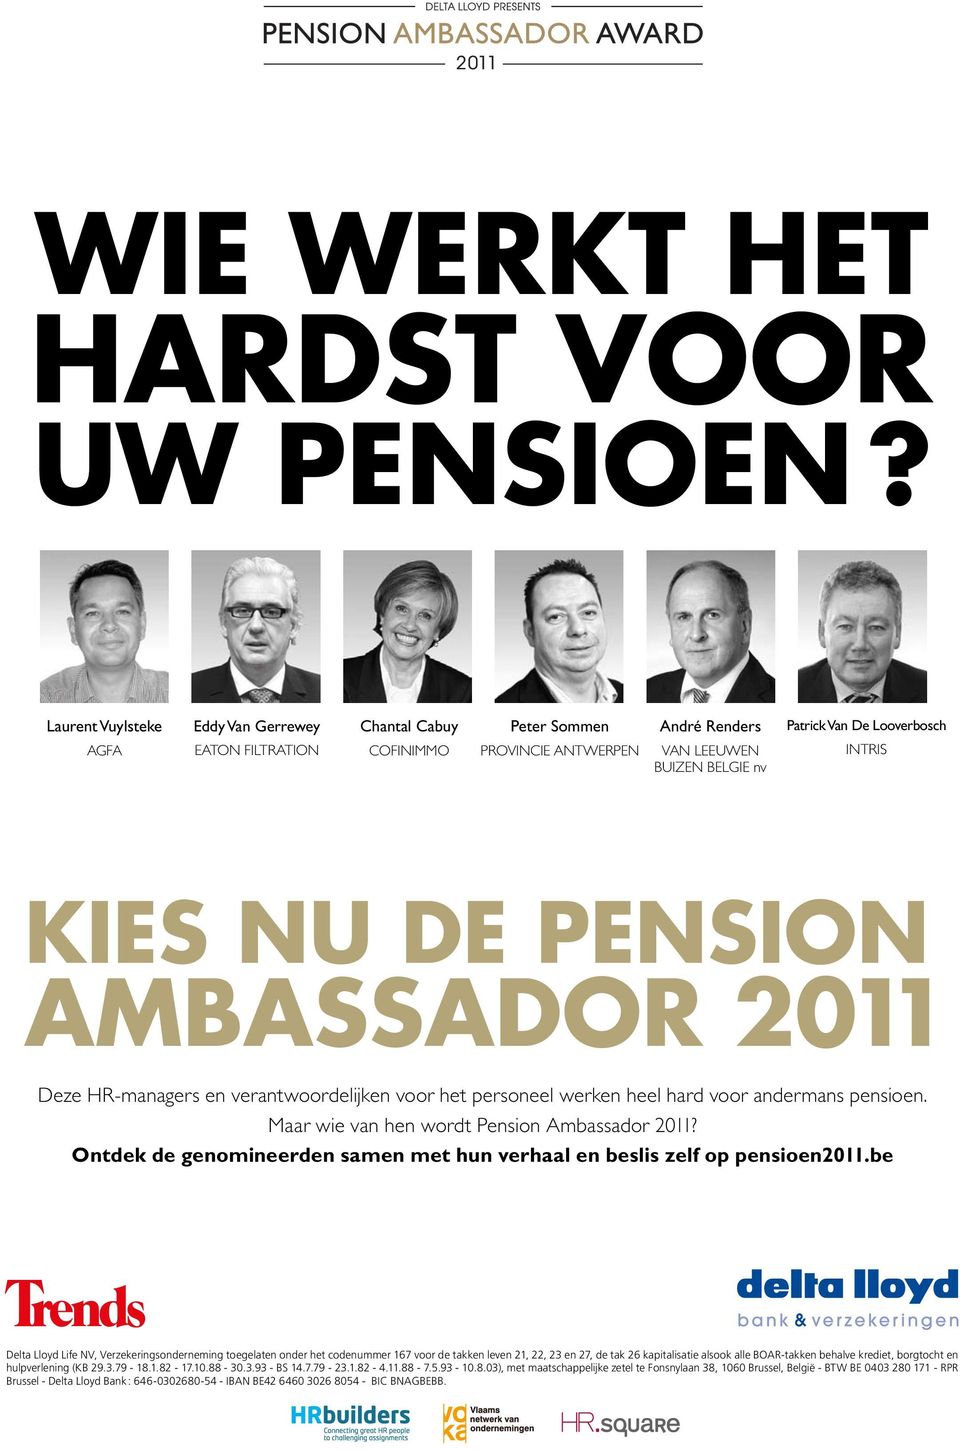 DE PENSION AMBASSADOR 2011 Deze HR-managers en verantwoordelijken voor het personeel werken heel hard voor andermans pensioen. Maar wie van hen wordt Pension Ambassador 2011?